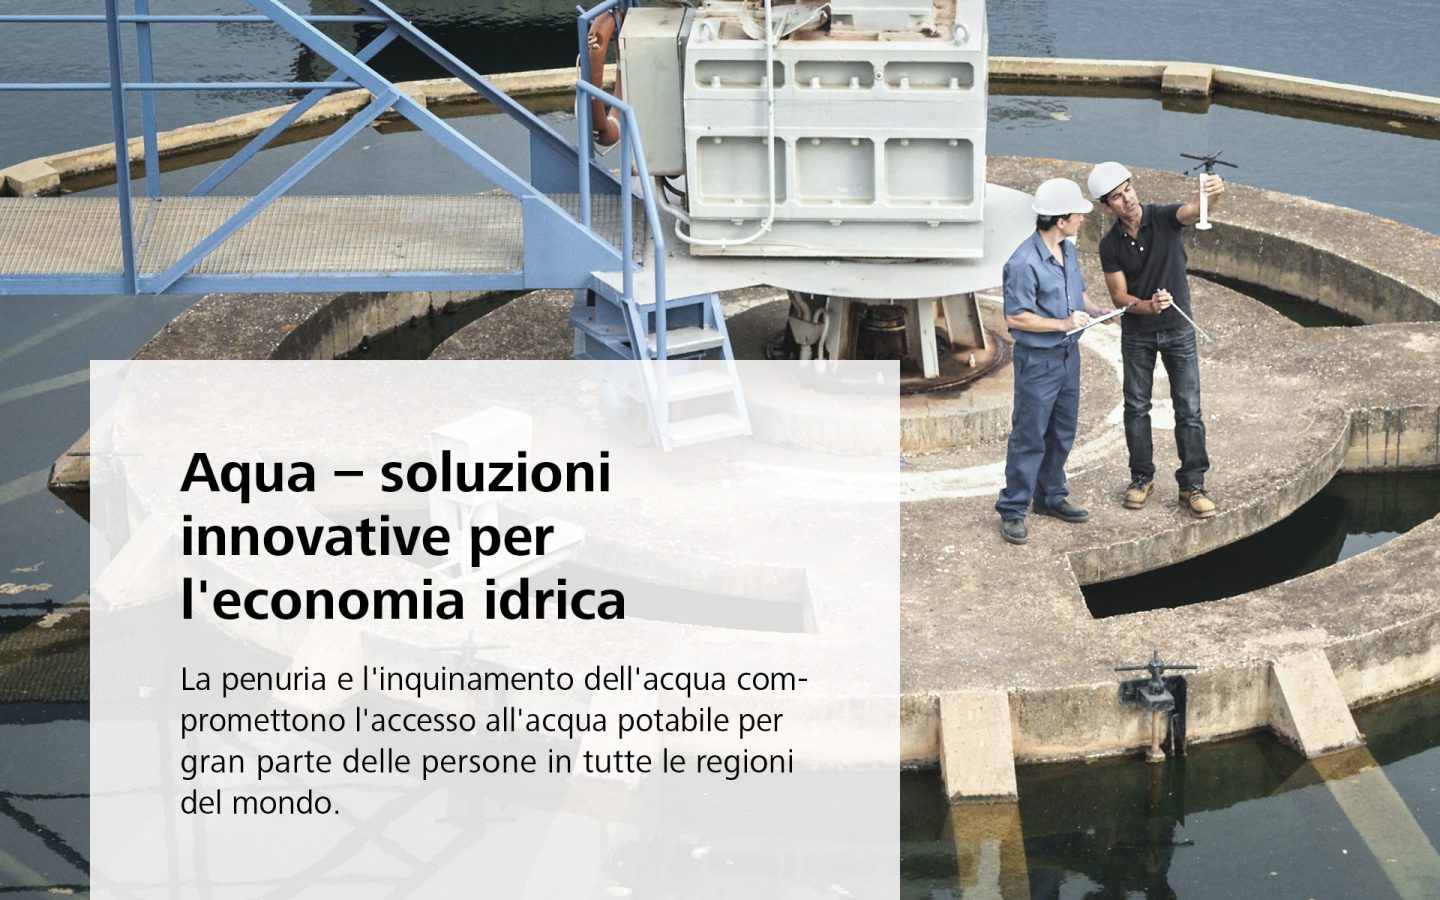 Aqua – soluzioni innovative per l'economia idrica